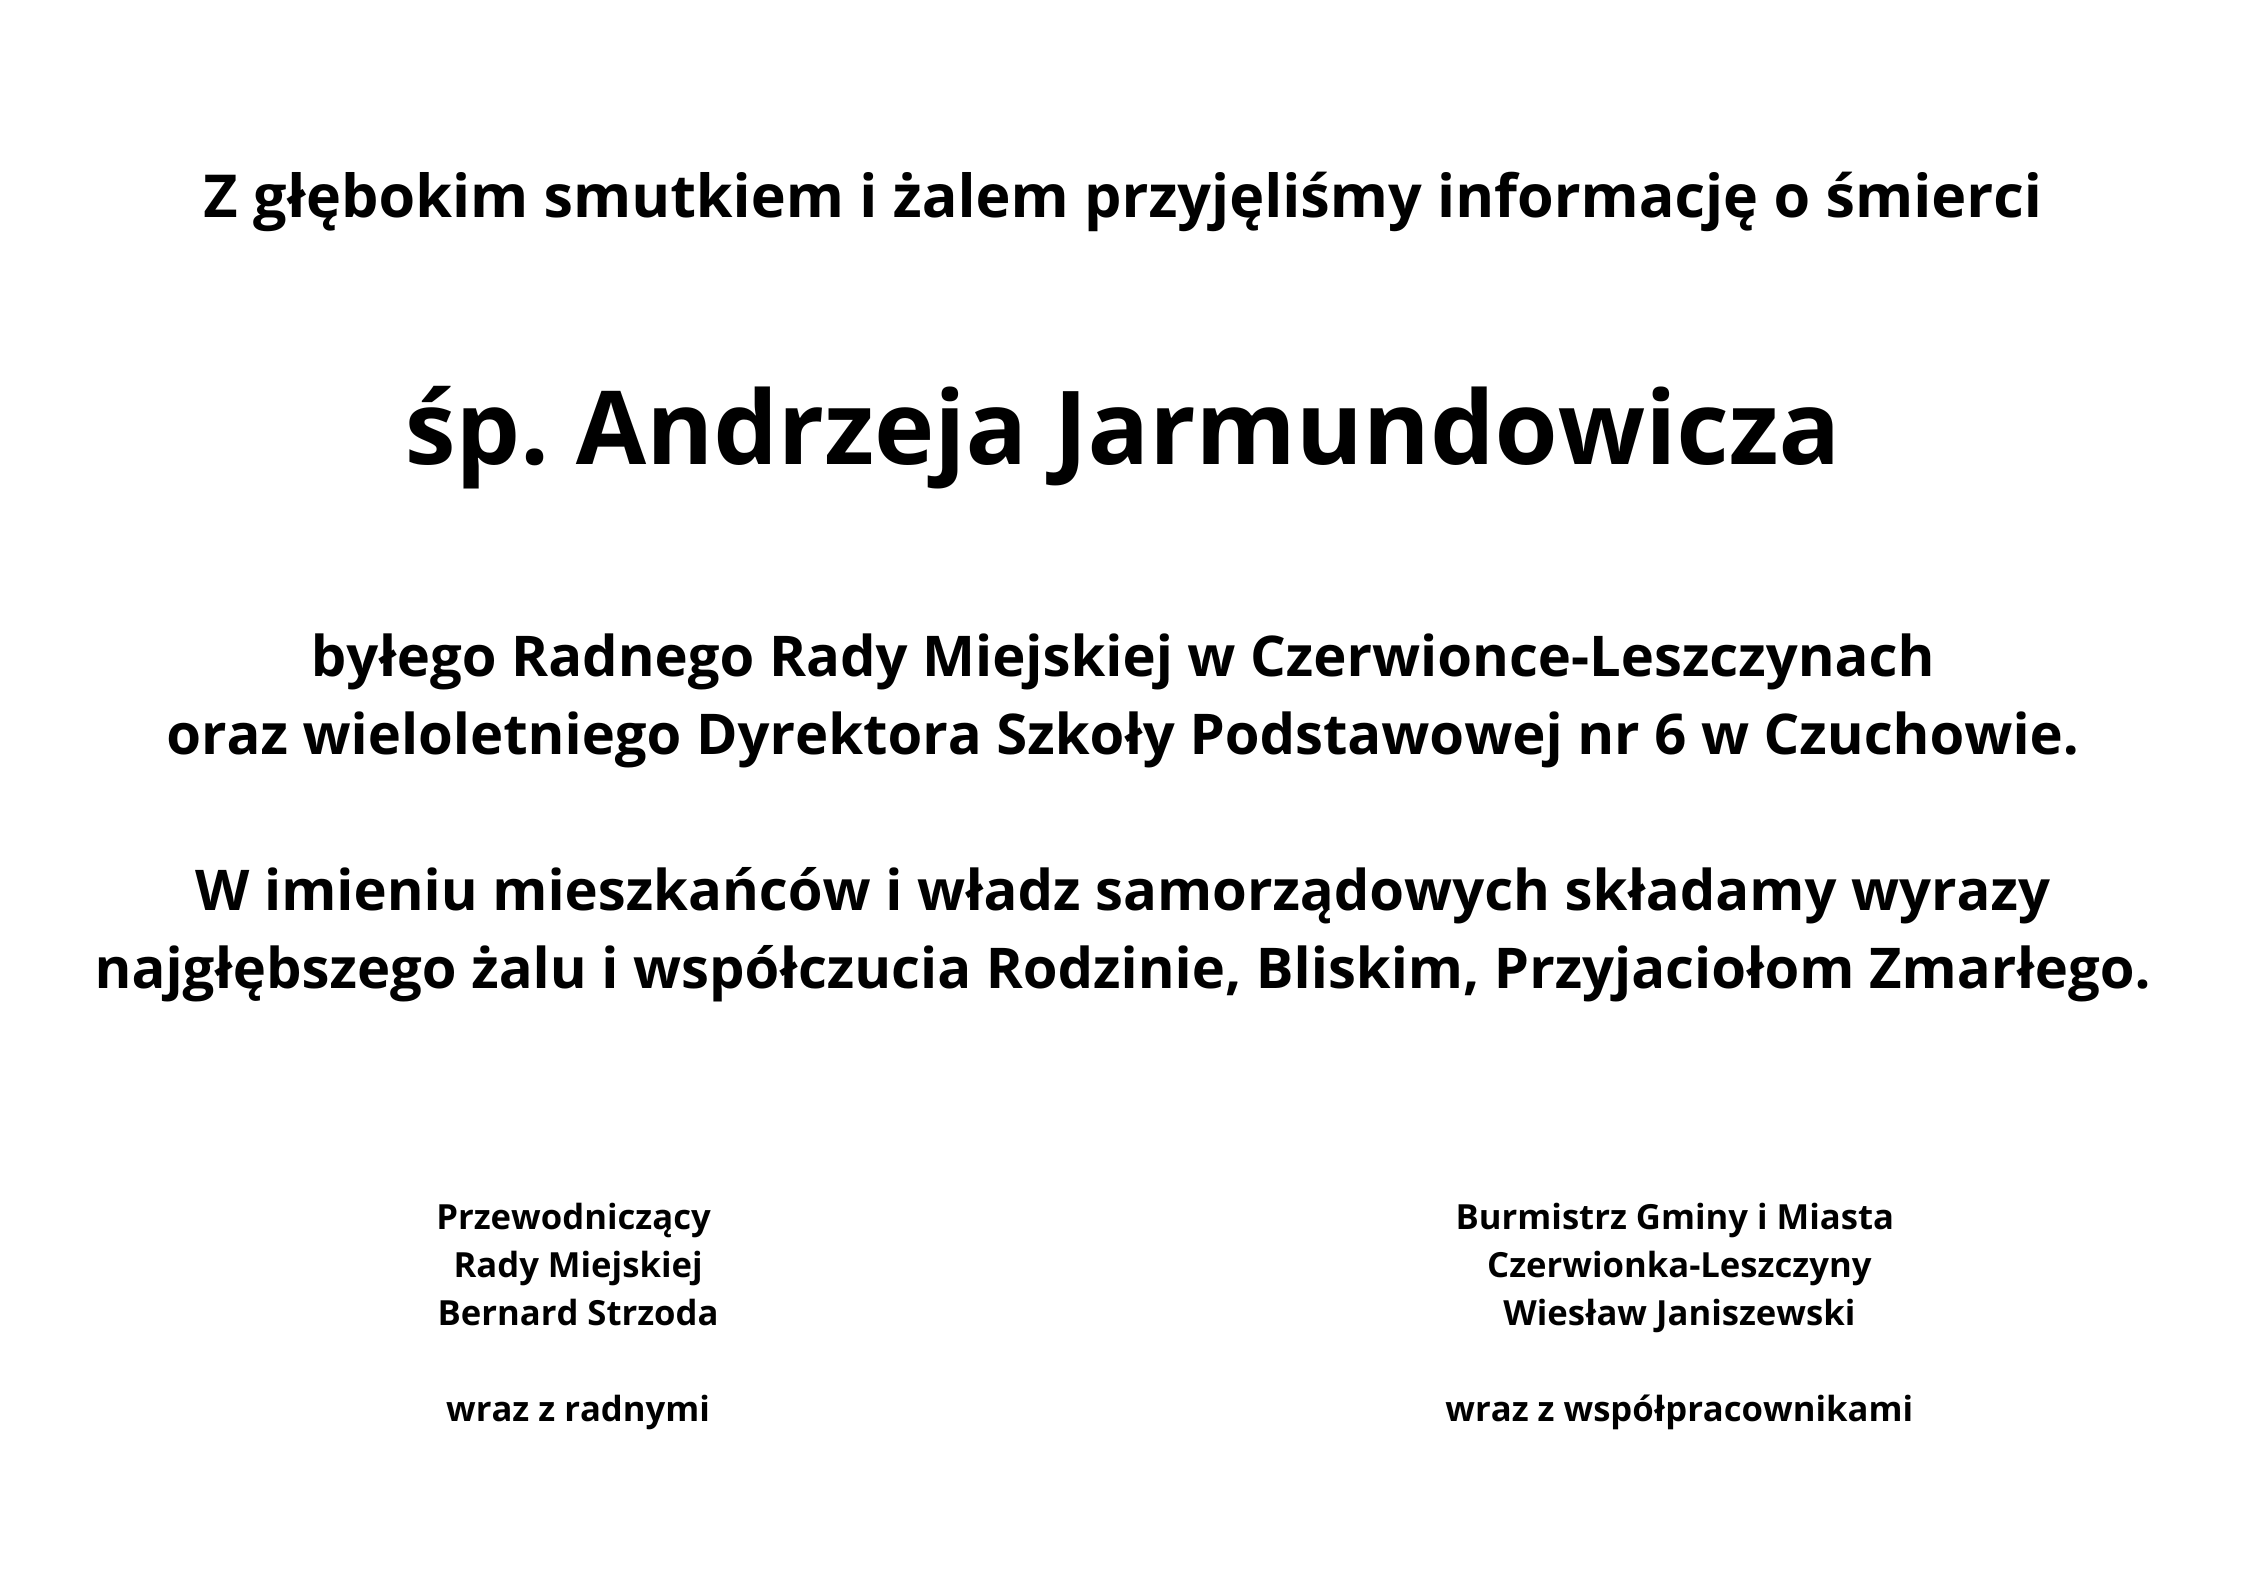 Żegnamy Andrzeja Jarmundowicza